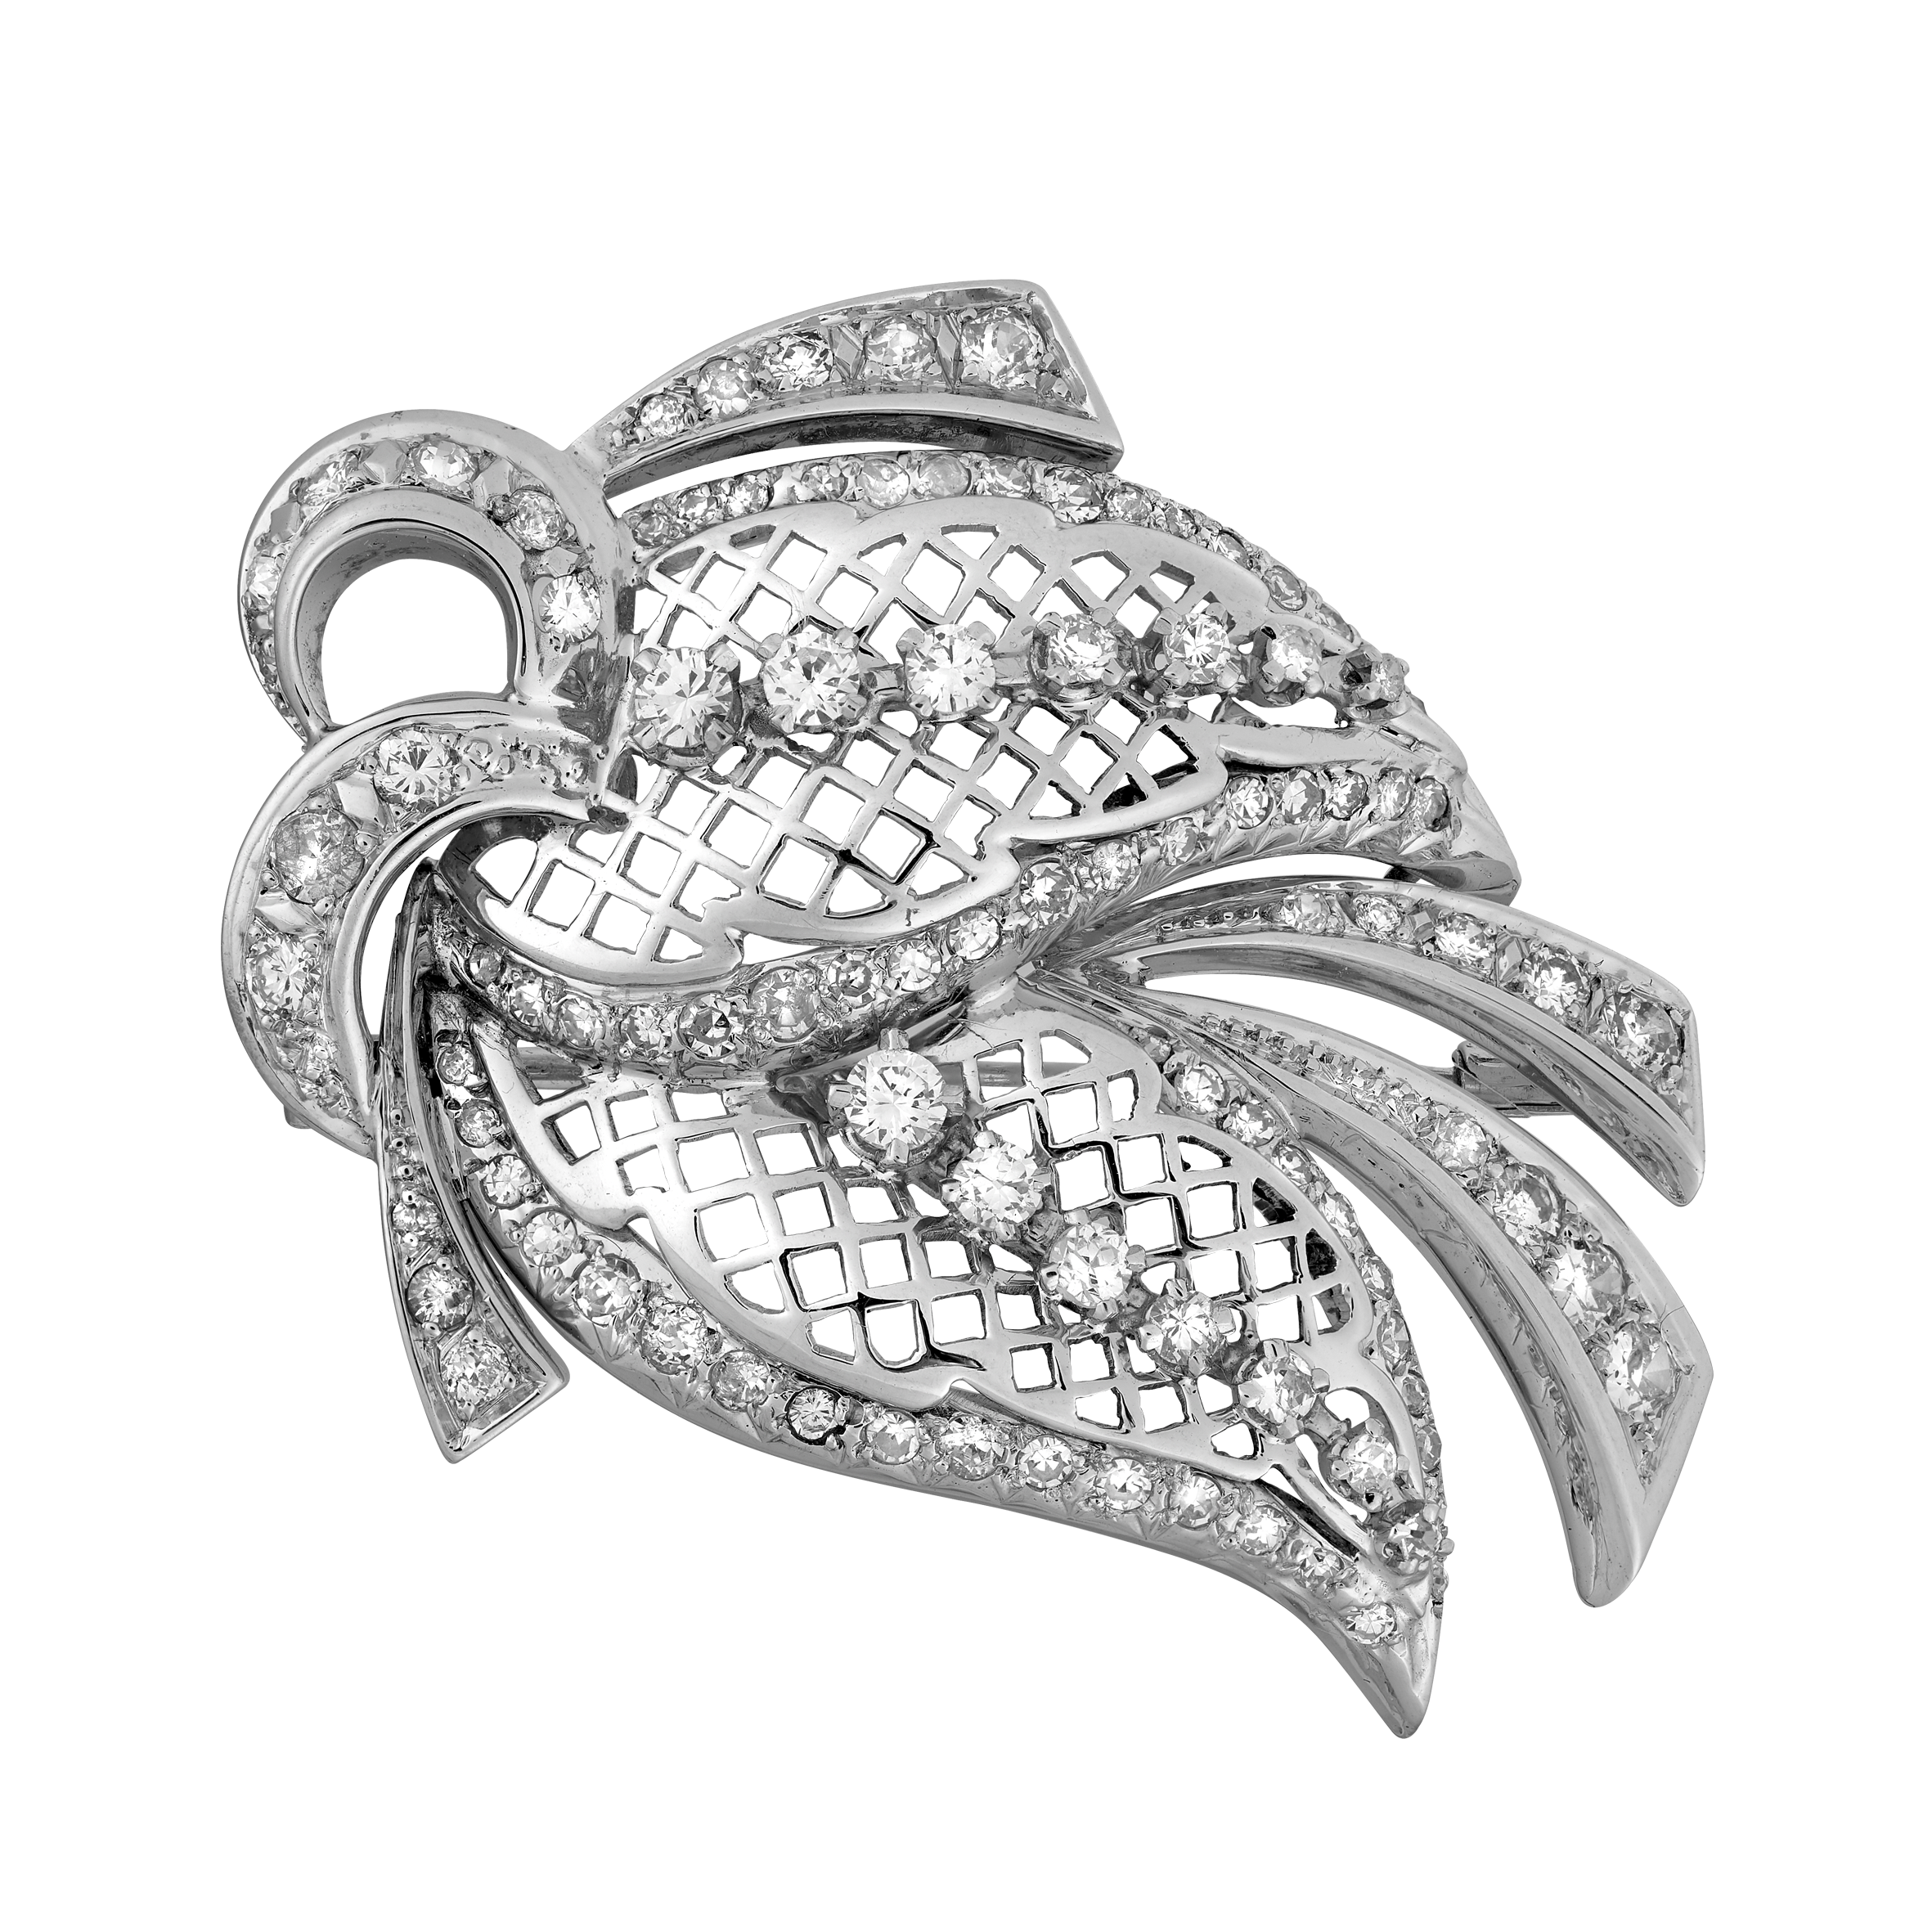 Broche feuillage ajouré diamants vers 1950 Gerphagnon